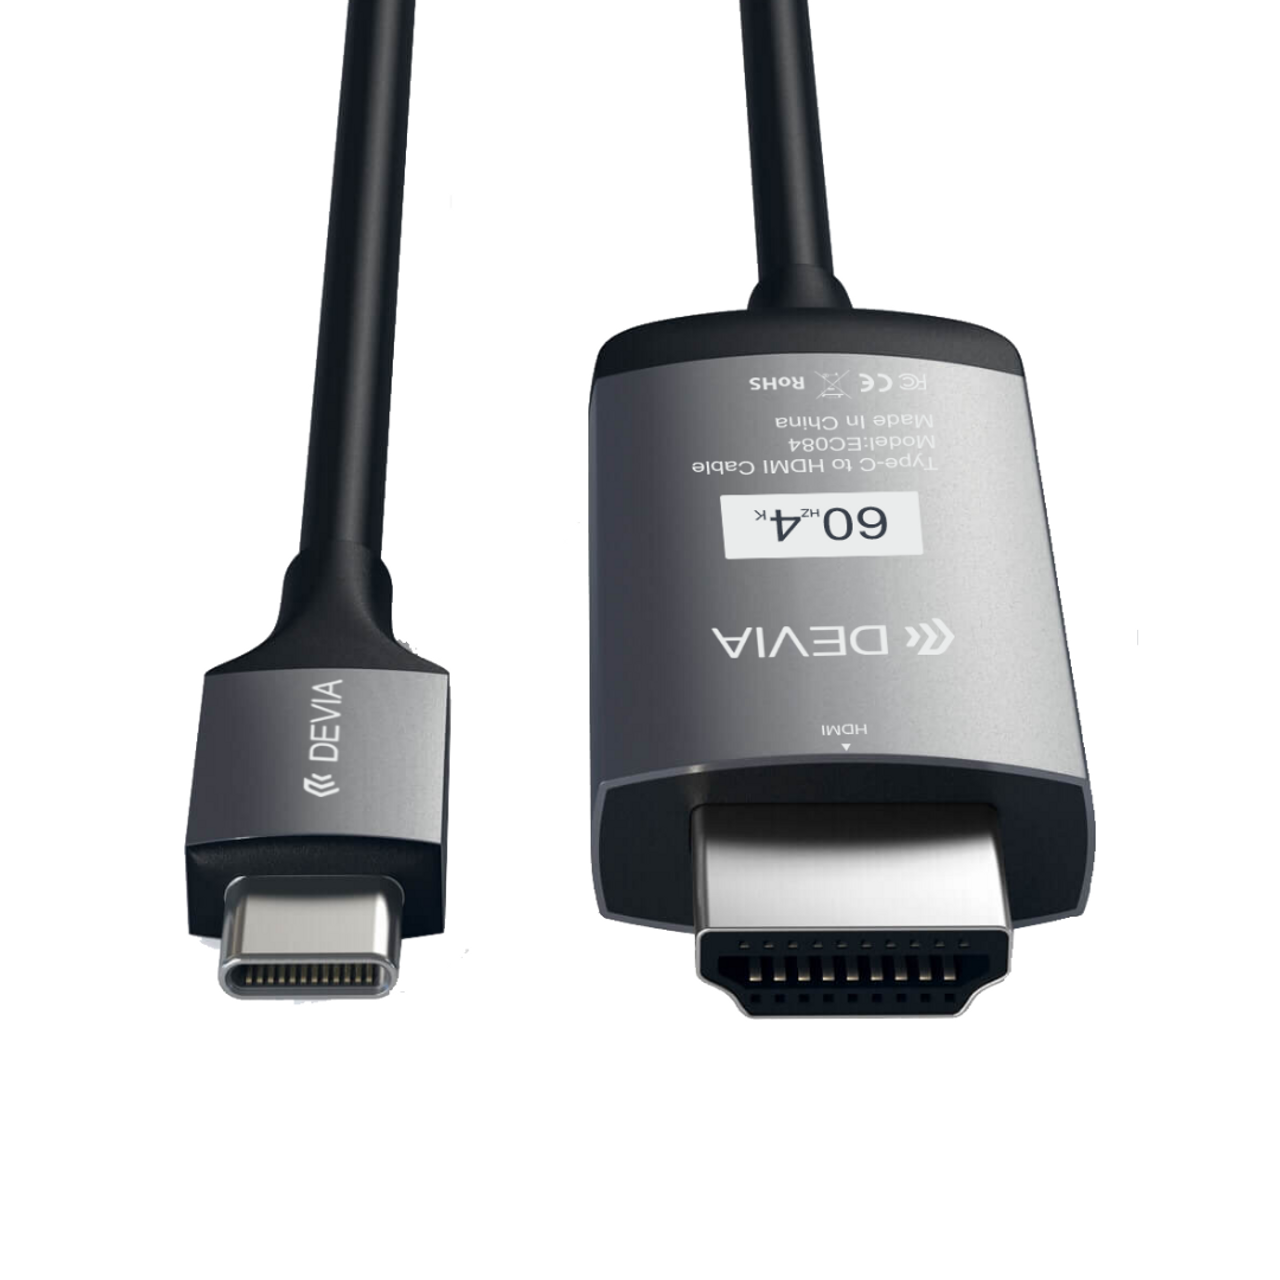 Cable Tipo C to HDMI - XavierVentas